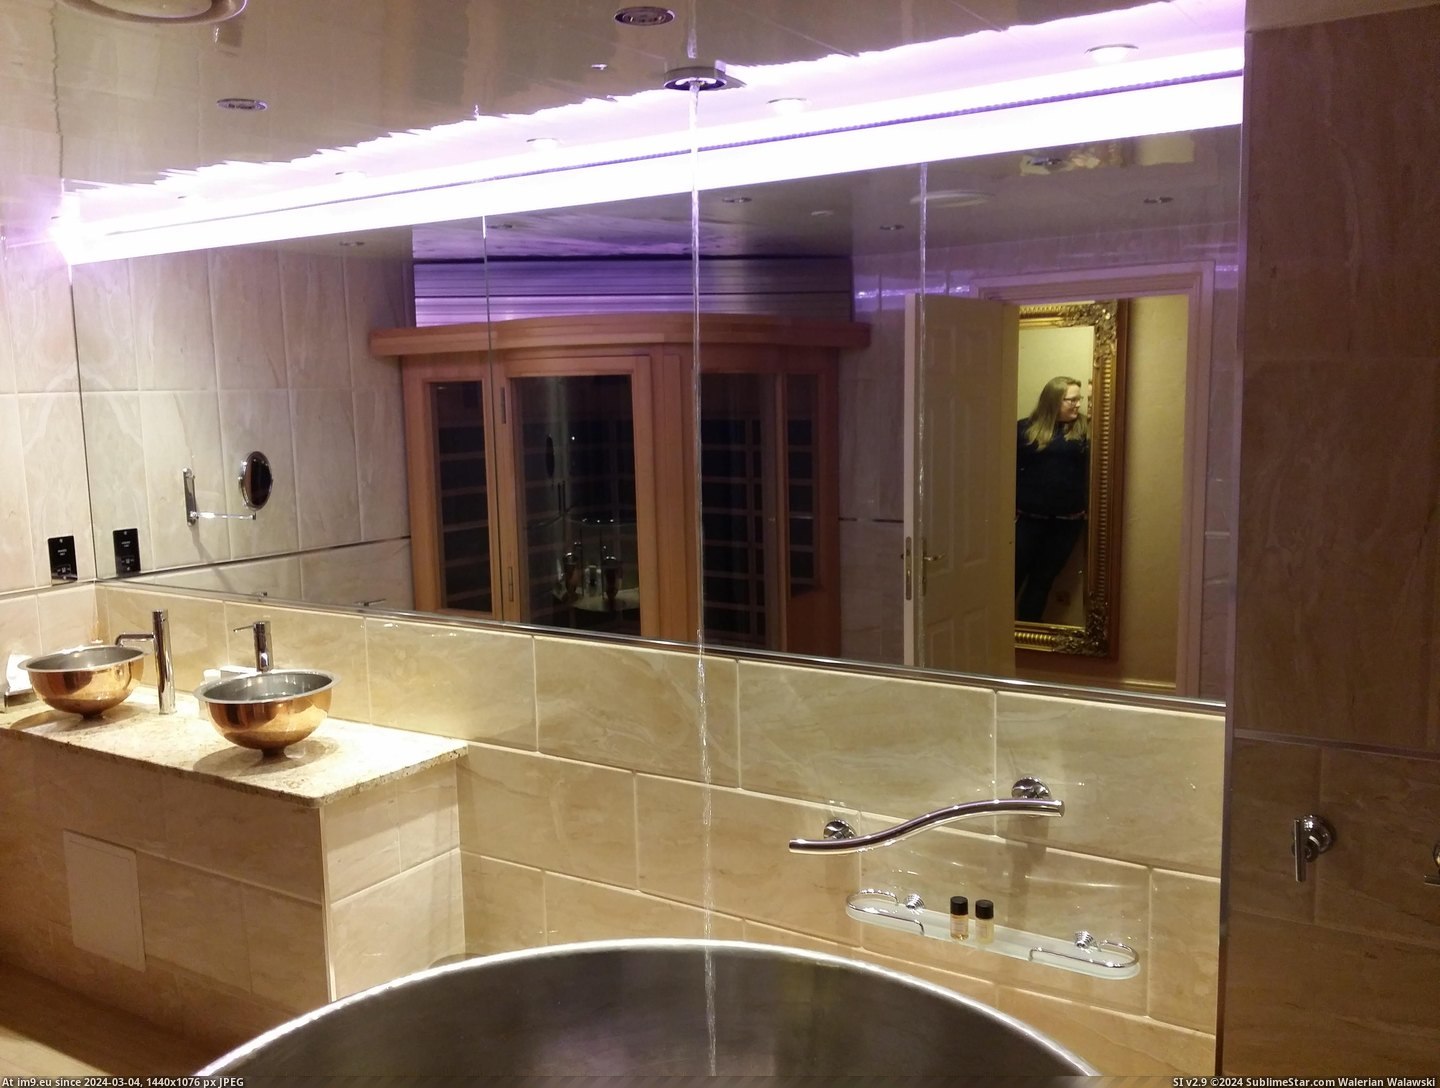 #Room #Hotel #Fills #Bath #Ceiling [Mildlyinteresting] The bath in my hotel room fills from the ceiling Pic. (Image of album My r/MILDLYINTERESTING favs))